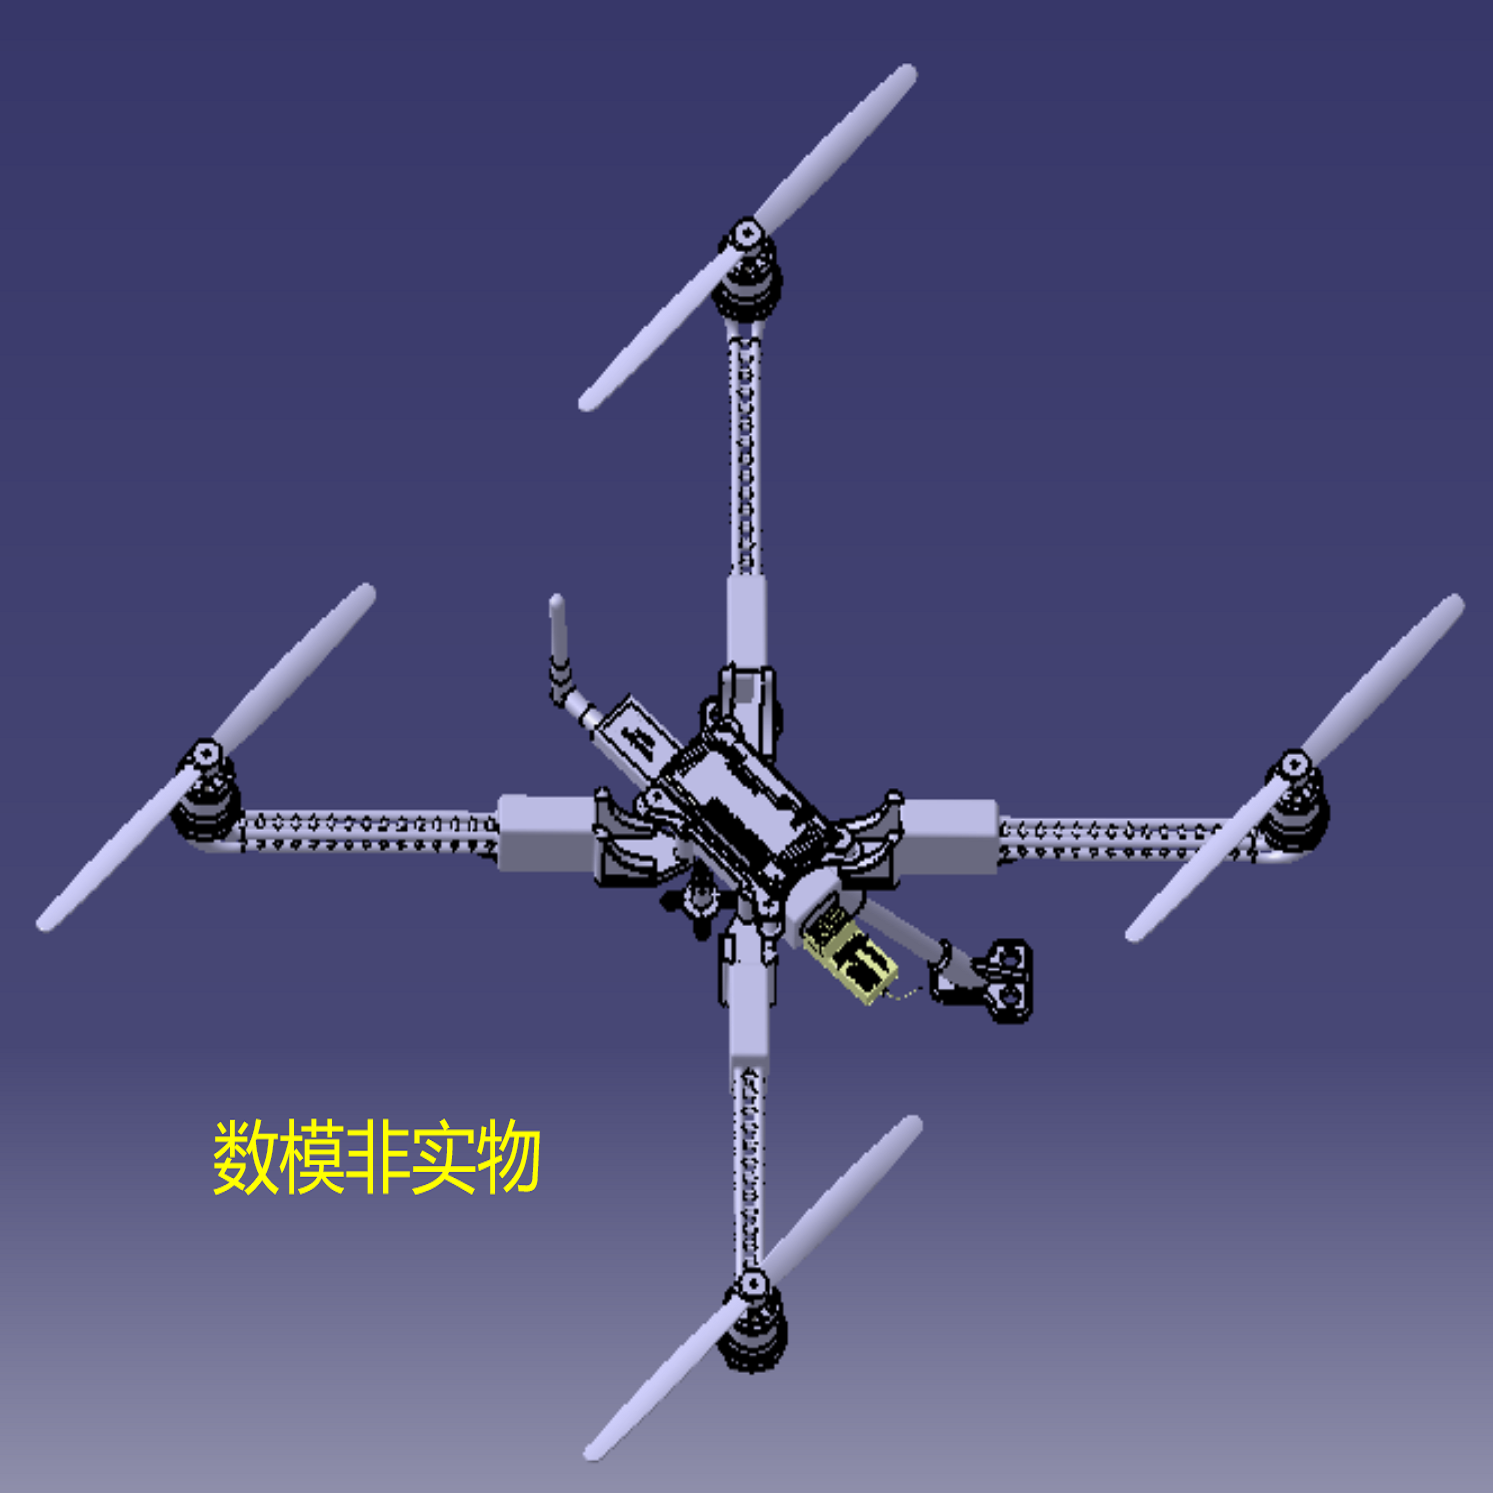 四旋翼无人机三维3D几何数模型UAV结构图纸曲面造型直升机